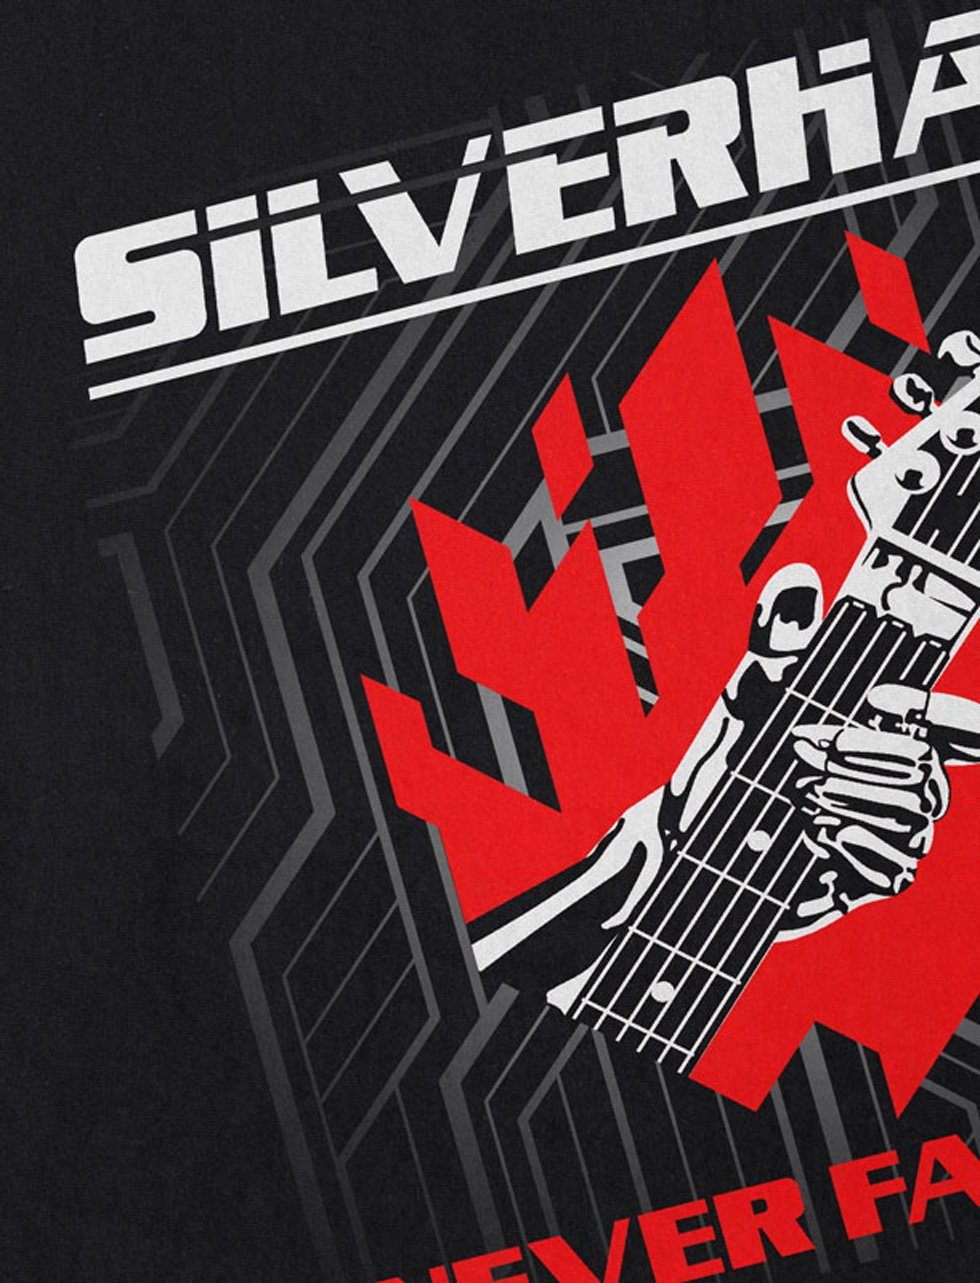 Silverhand johnny Herren Print-Shirt Samurai cyberpunk style3 band T-Shirt